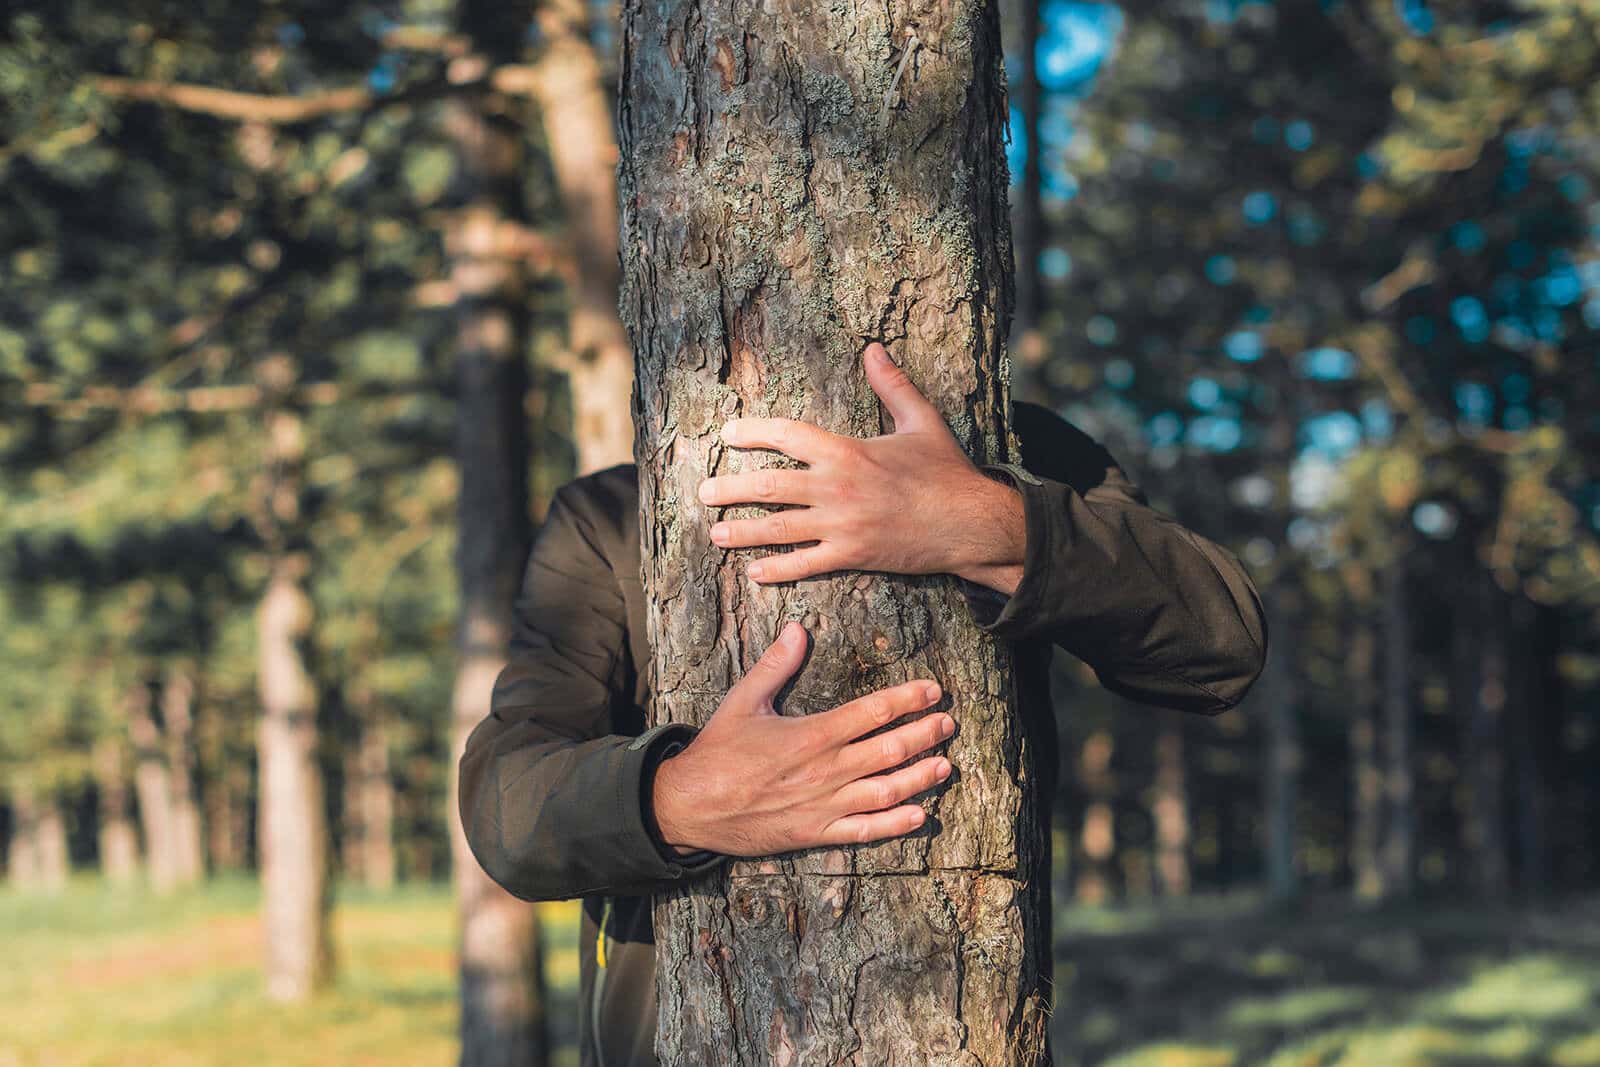 Un albero nel bosco viene abbracciato da una persona nascosta dietro di esso.